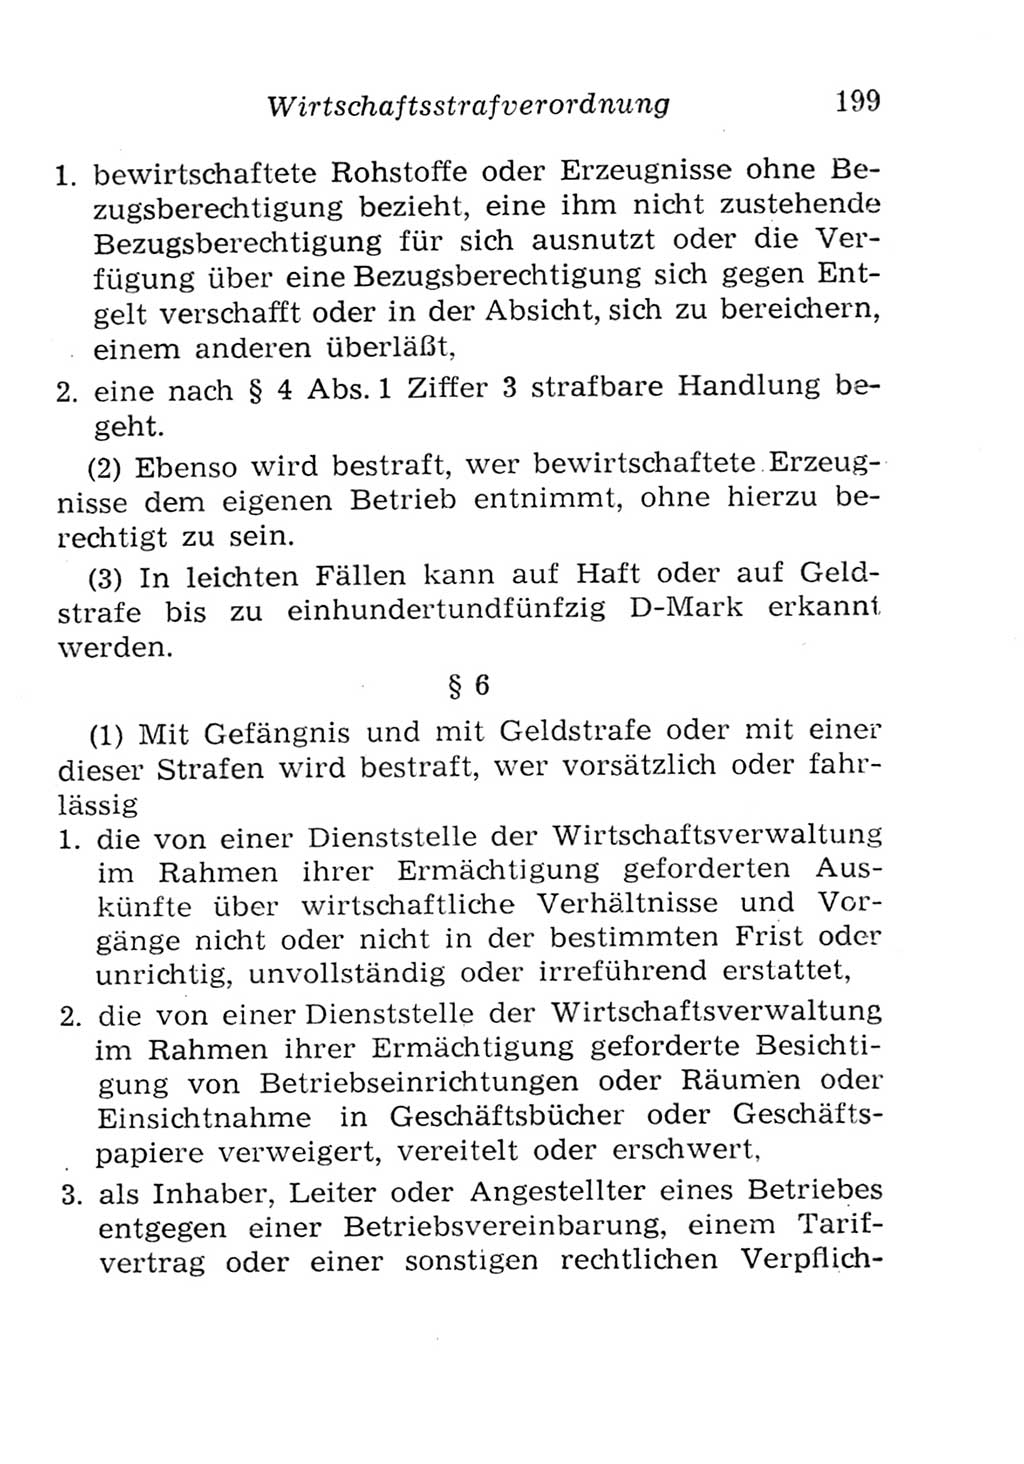 Strafgesetzbuch (StGB) und andere Strafgesetze [Deutsche Demokratische Republik (DDR)] 1957, Seite 199 (StGB Strafges. DDR 1957, S. 199)